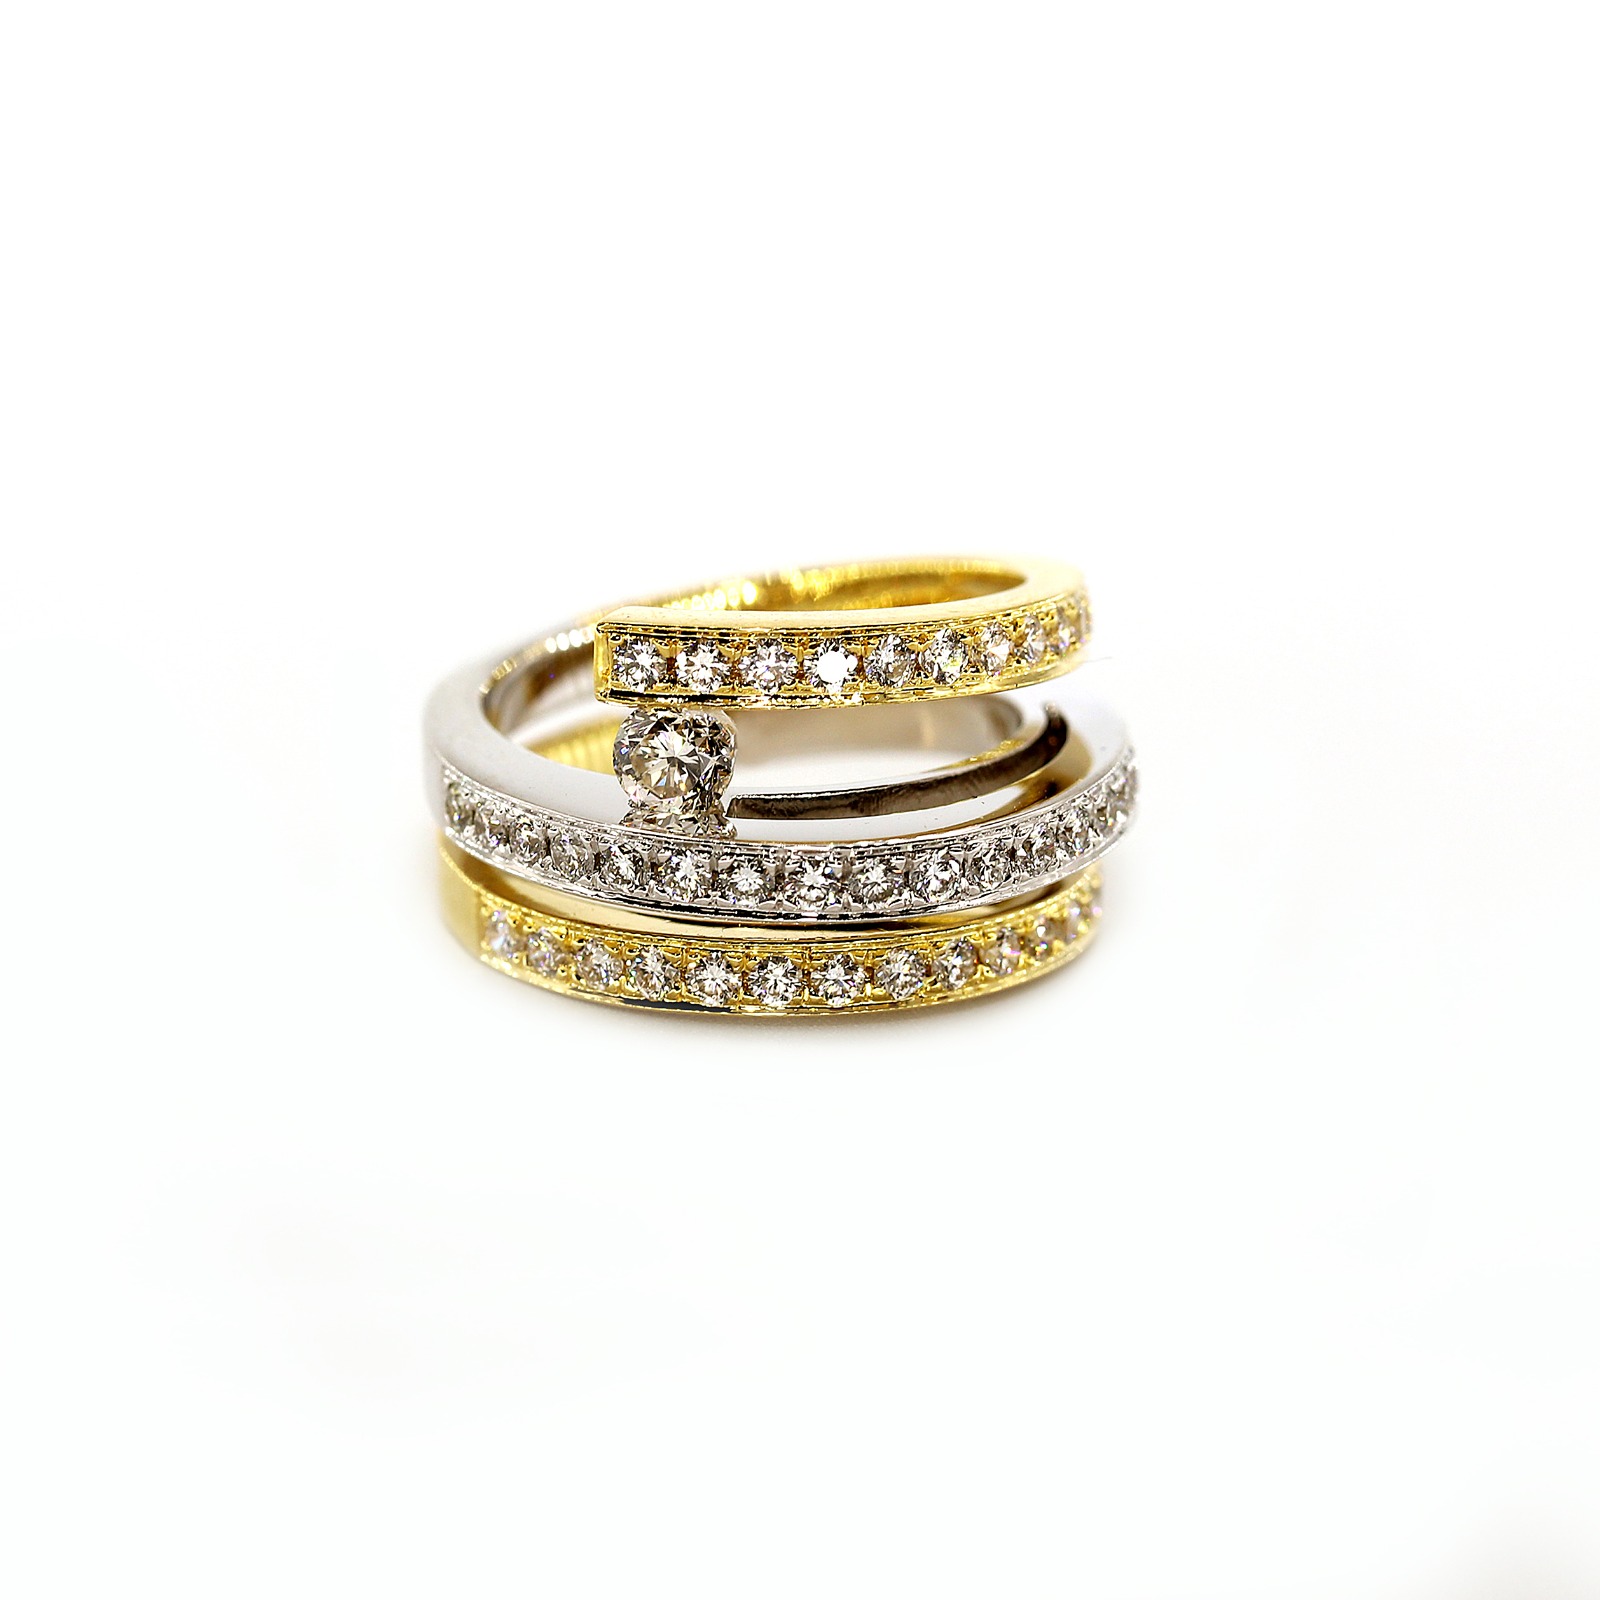 Specjalnie zaprojektowany pierścionek dla kobiet z 18-karatowego białego złota i diamentów - oferta dzienna przez GoldenEyeJewellery.net